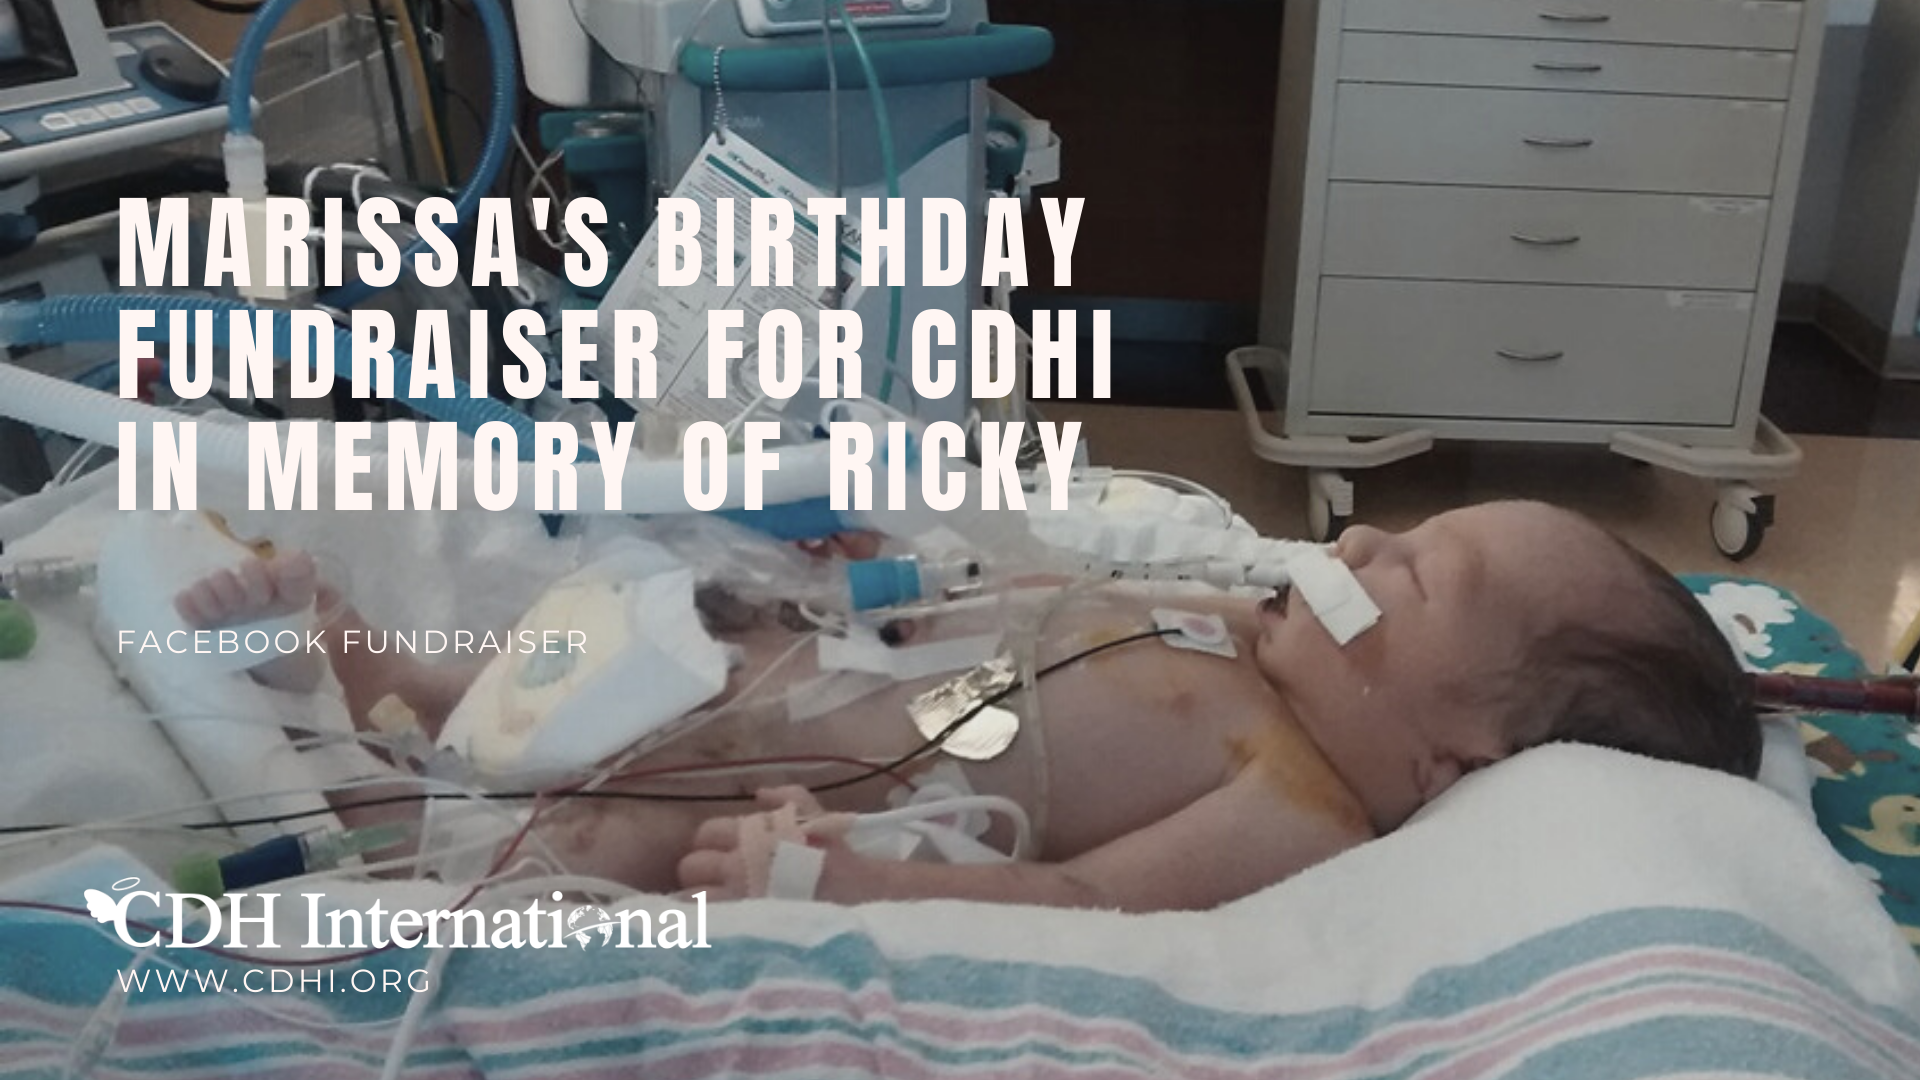 Isaiah’s Birthday Fundraiser for CDHi in Memory of Kayden